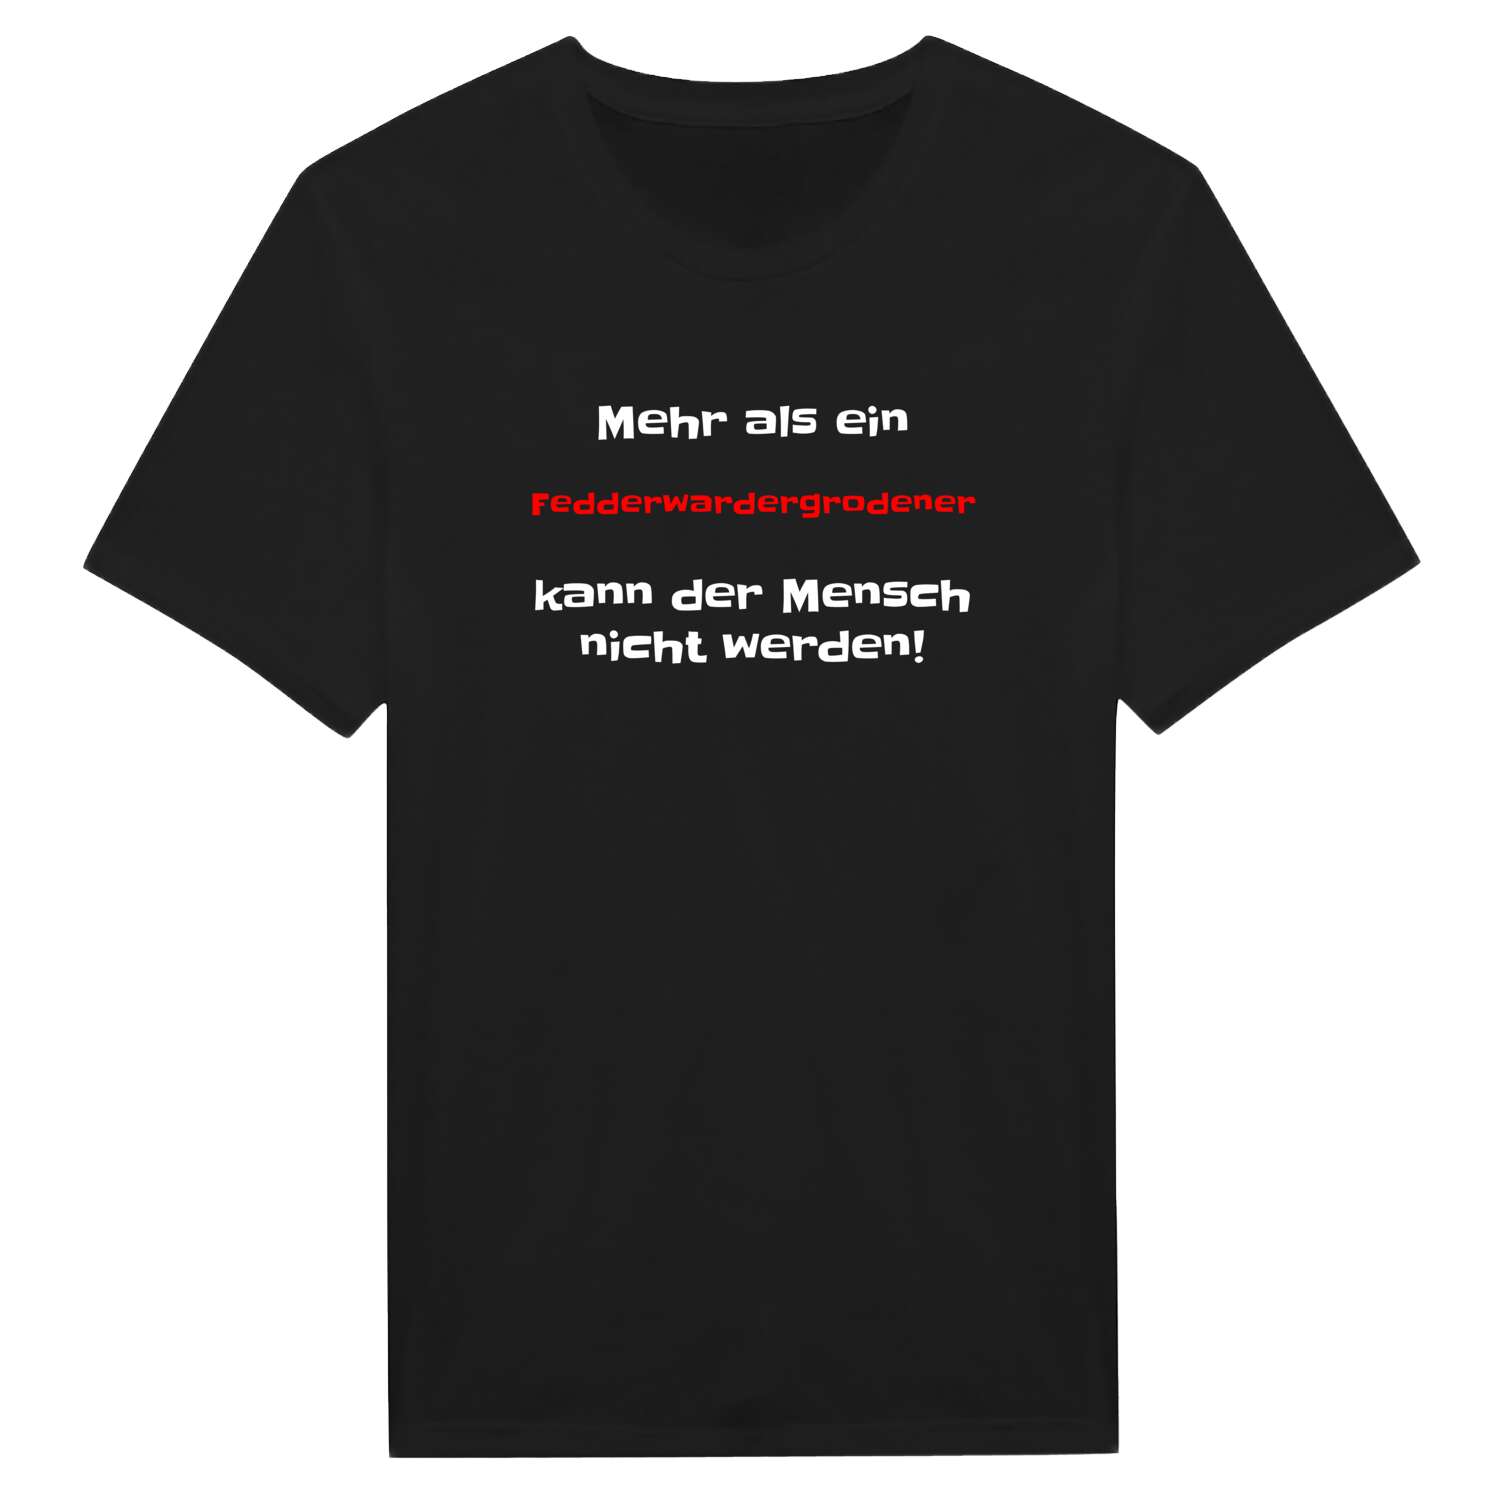 Fedderwardergroden T-Shirt »Mehr als ein«